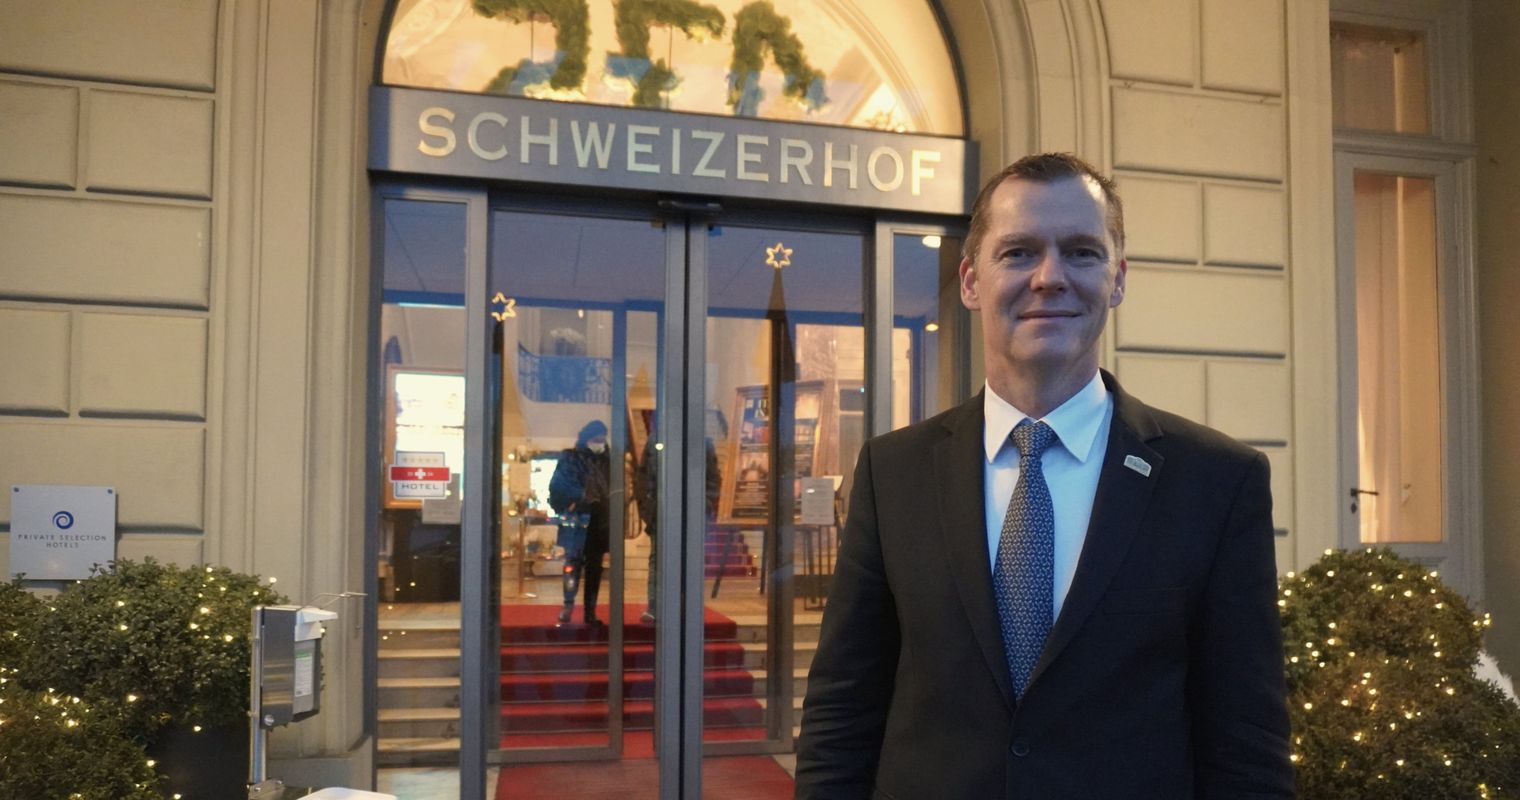 Herausfordernd – das war 2021 für das Hotel Schweizerhof